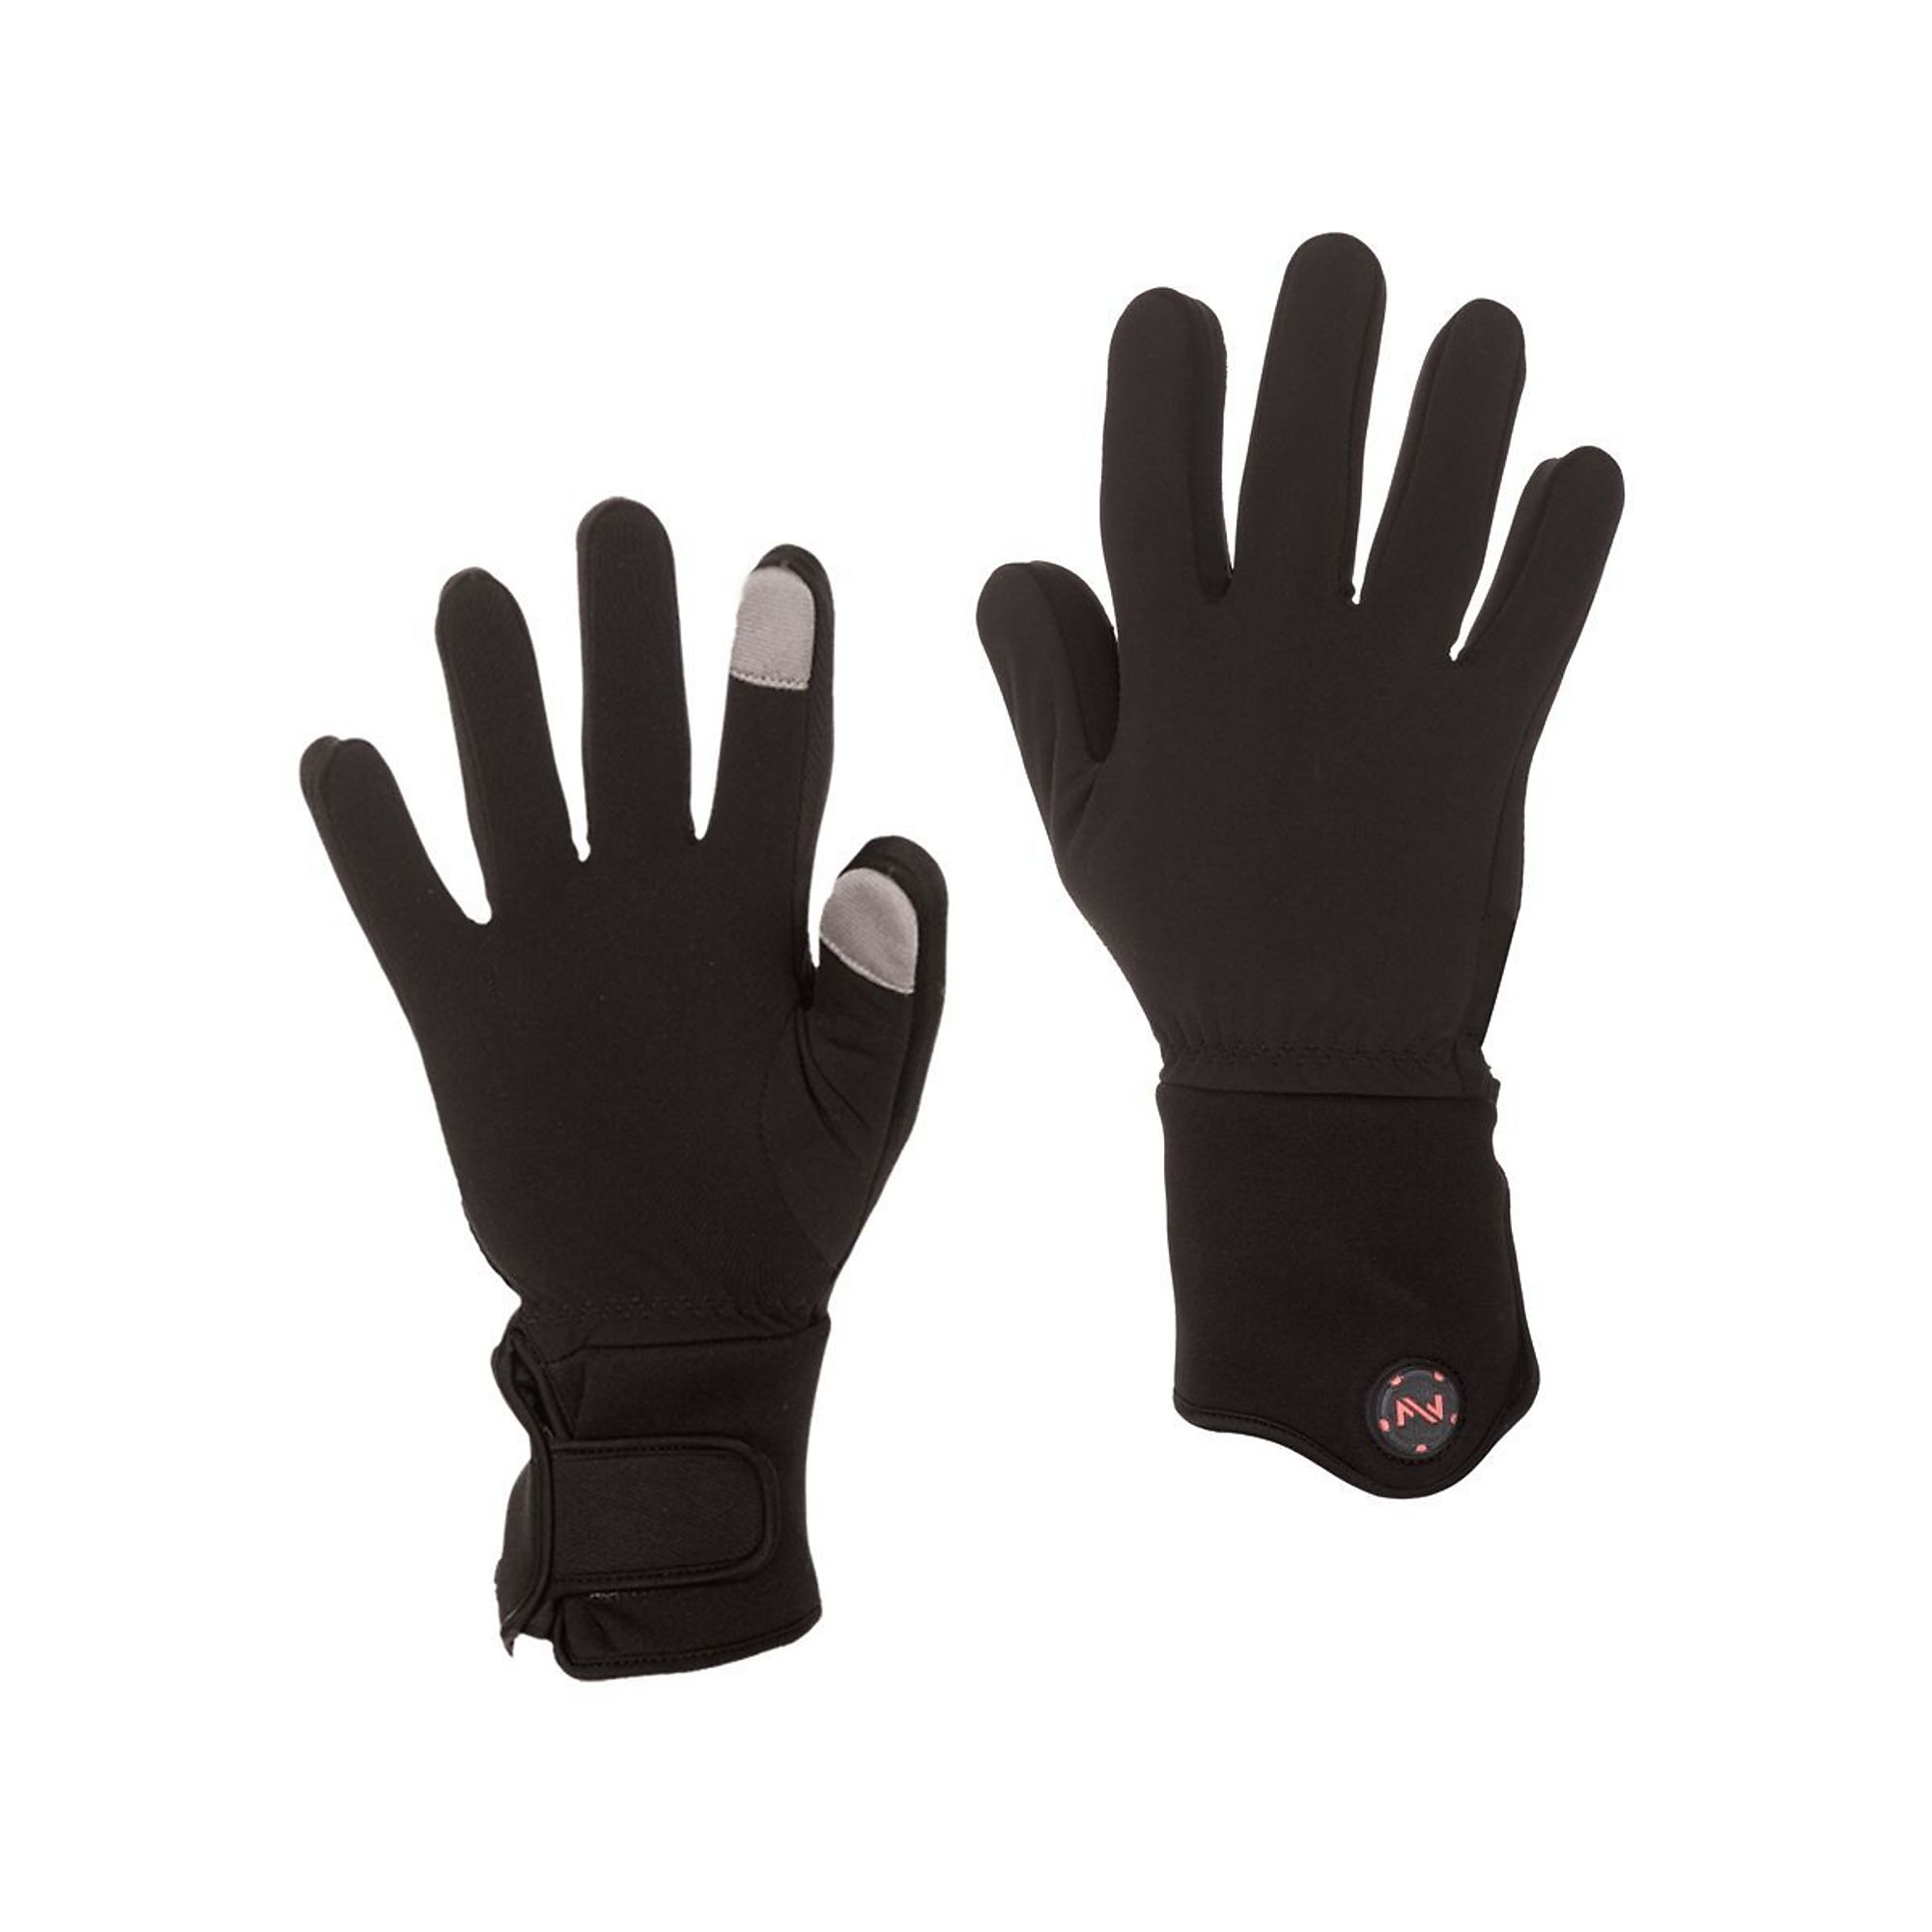 Fieldsheer, Glove Liner | Unisex | 7.4V | BLK | LG, Size L, Color Black, Included (qty.) 2 Model MWUG06010420 -  MOBILE WARMING